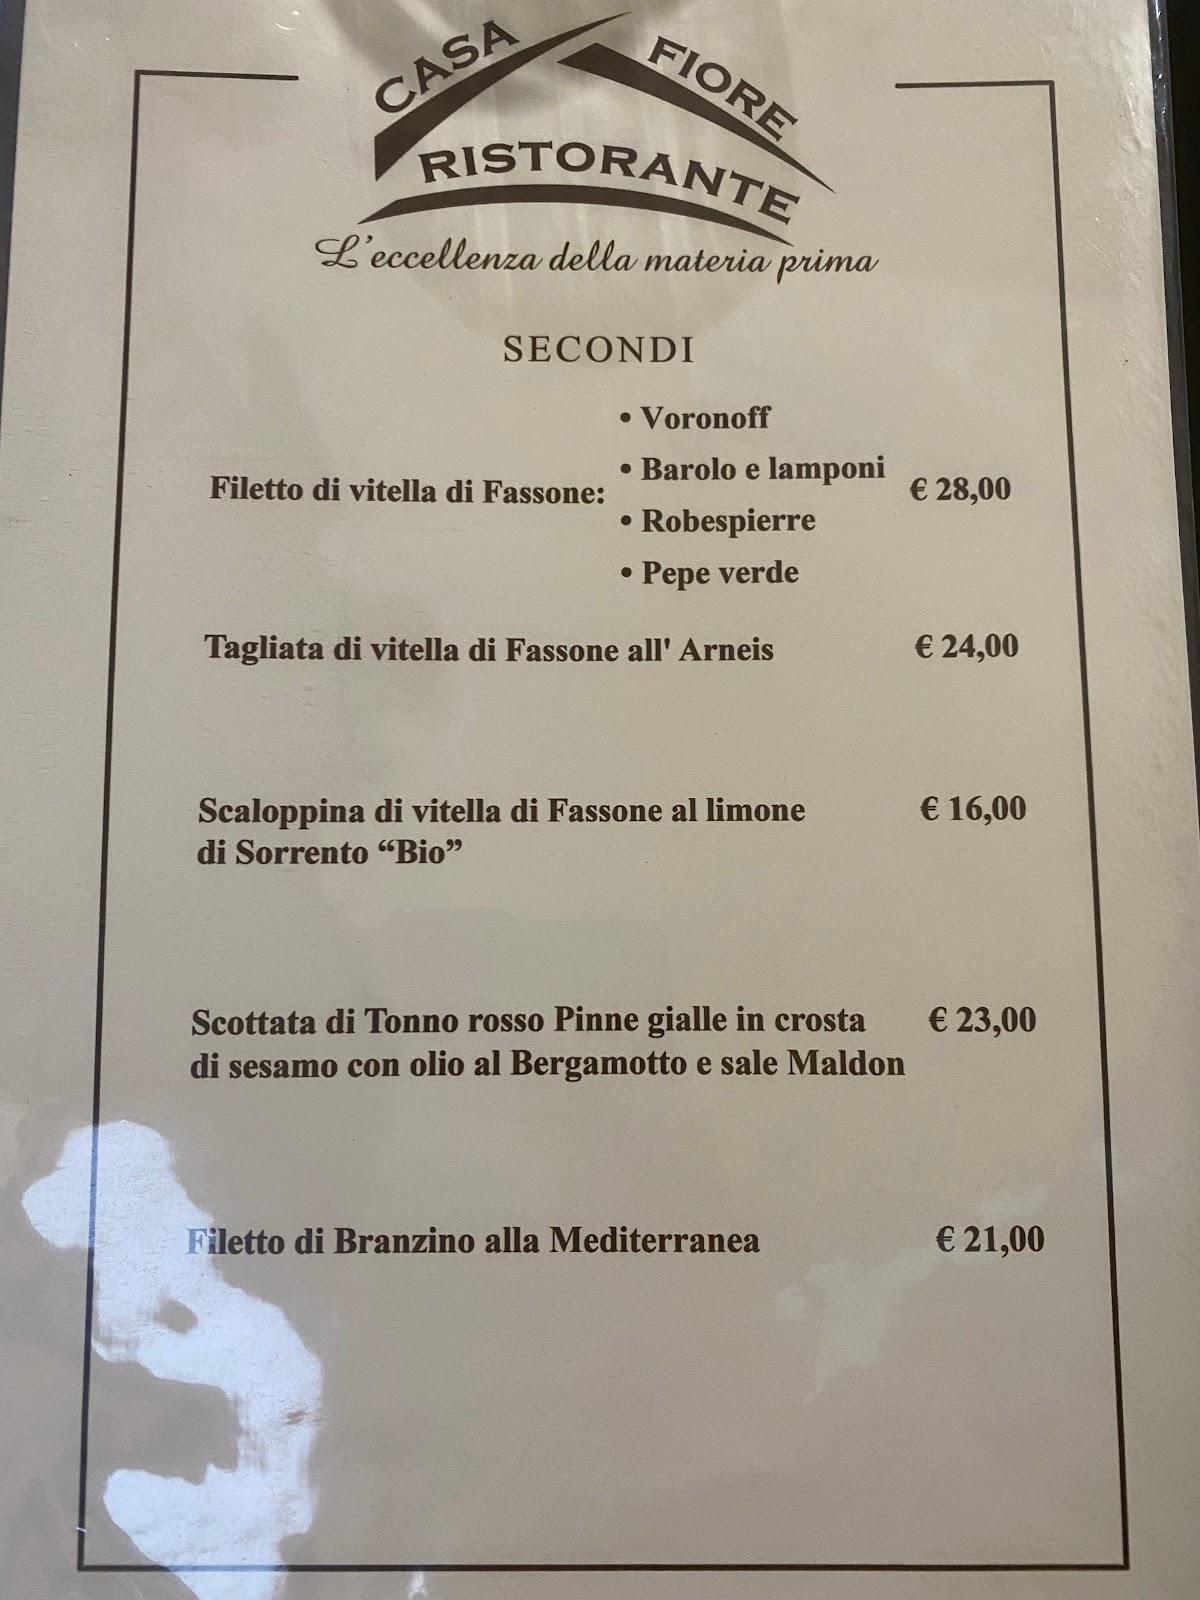 Carta del restaurante Casa Fiore, Turin